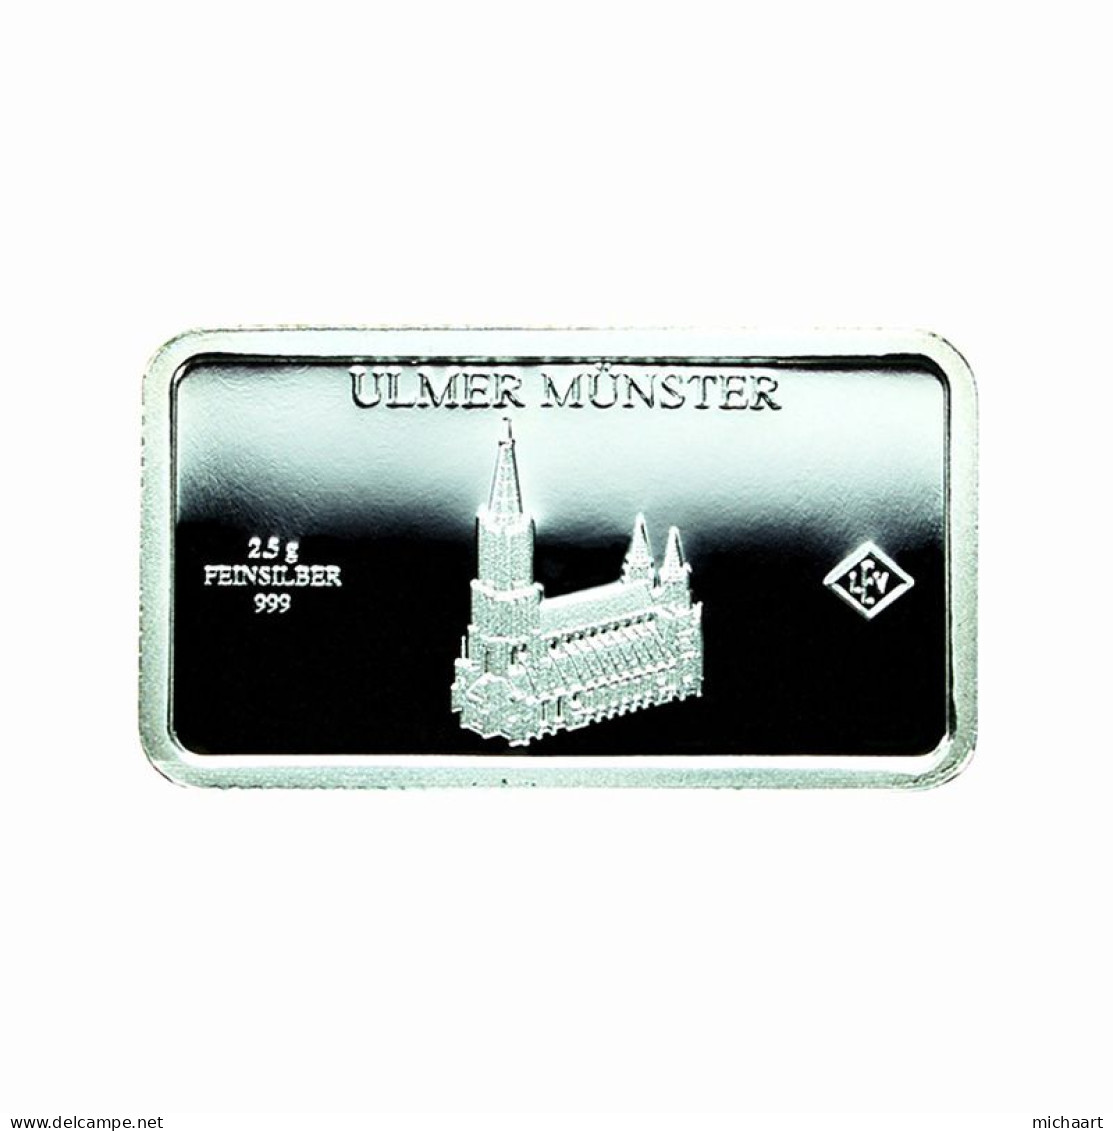 Germany Silver Ingot Bar Proof 2.5g Landmarks Ulm Minster Church 03853 - Herdenkingsmunt